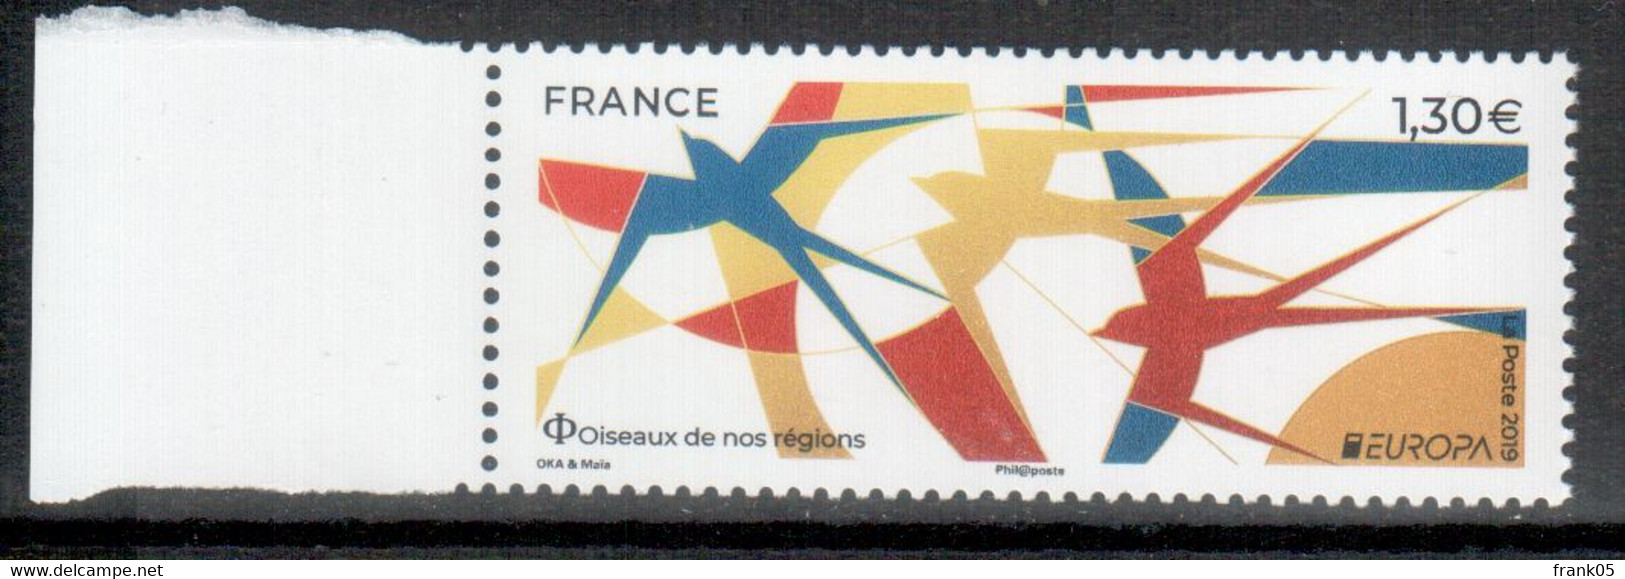 Frankreich / France 2019 EUROPA ** - 2019